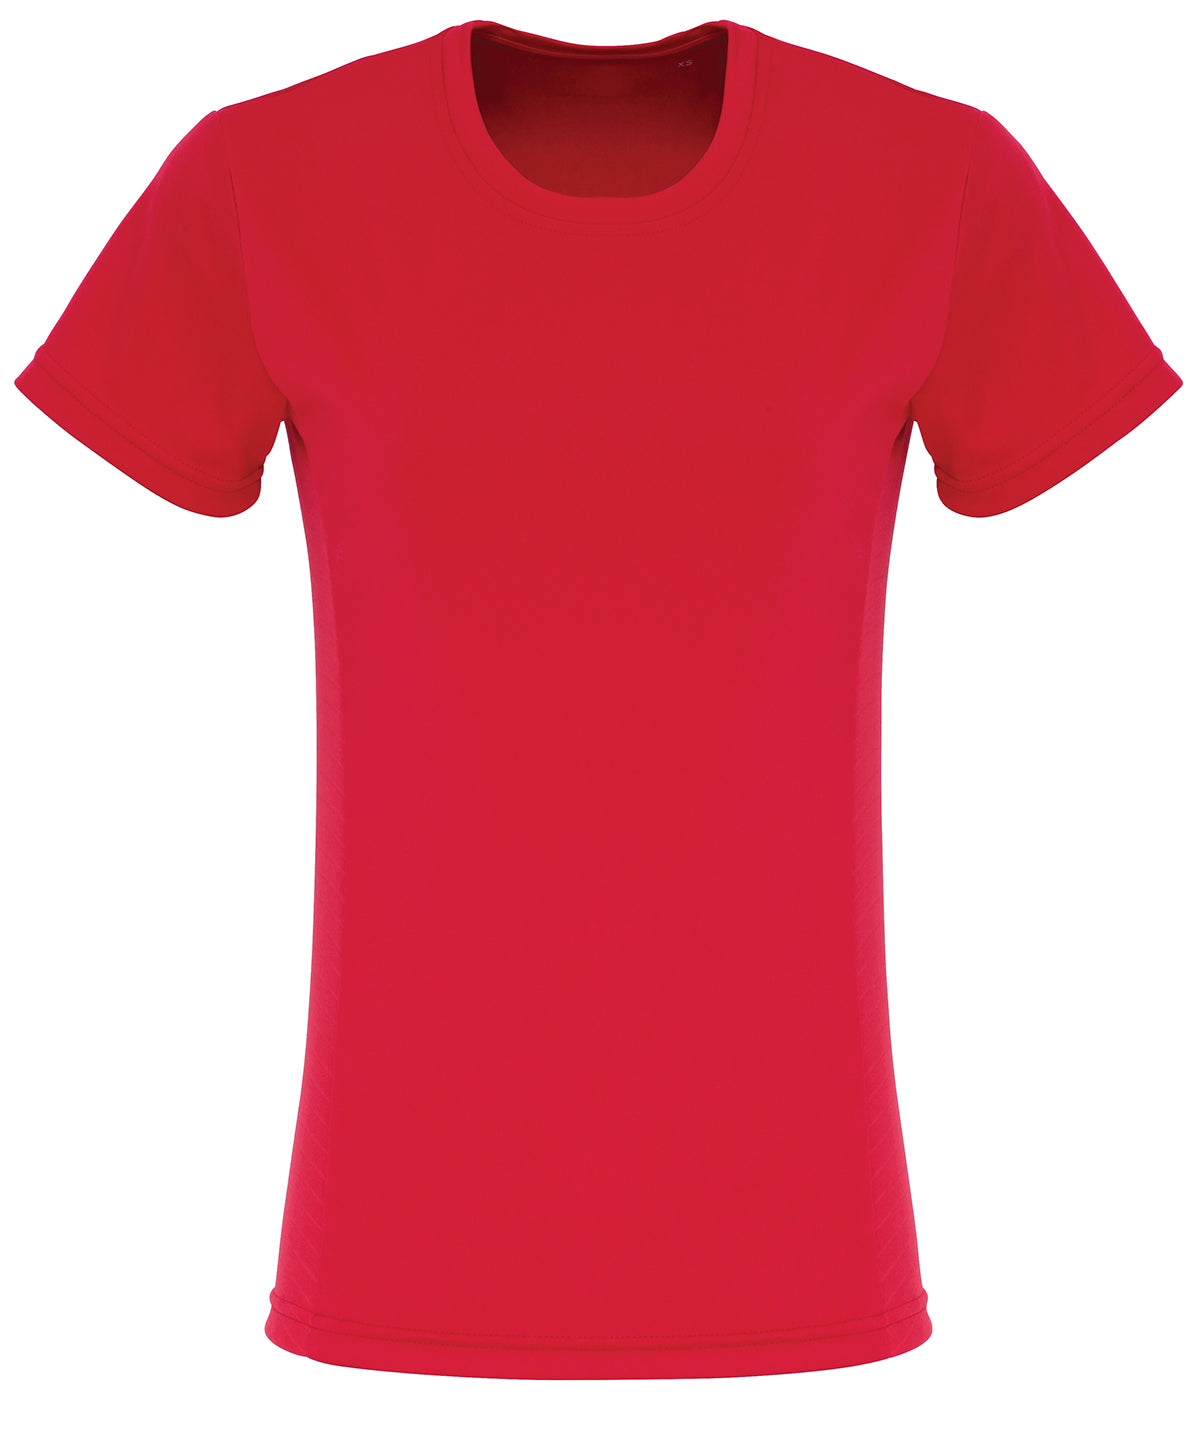 Stuttermabolir - Women's TriDri® Embossed Panel T-shirt